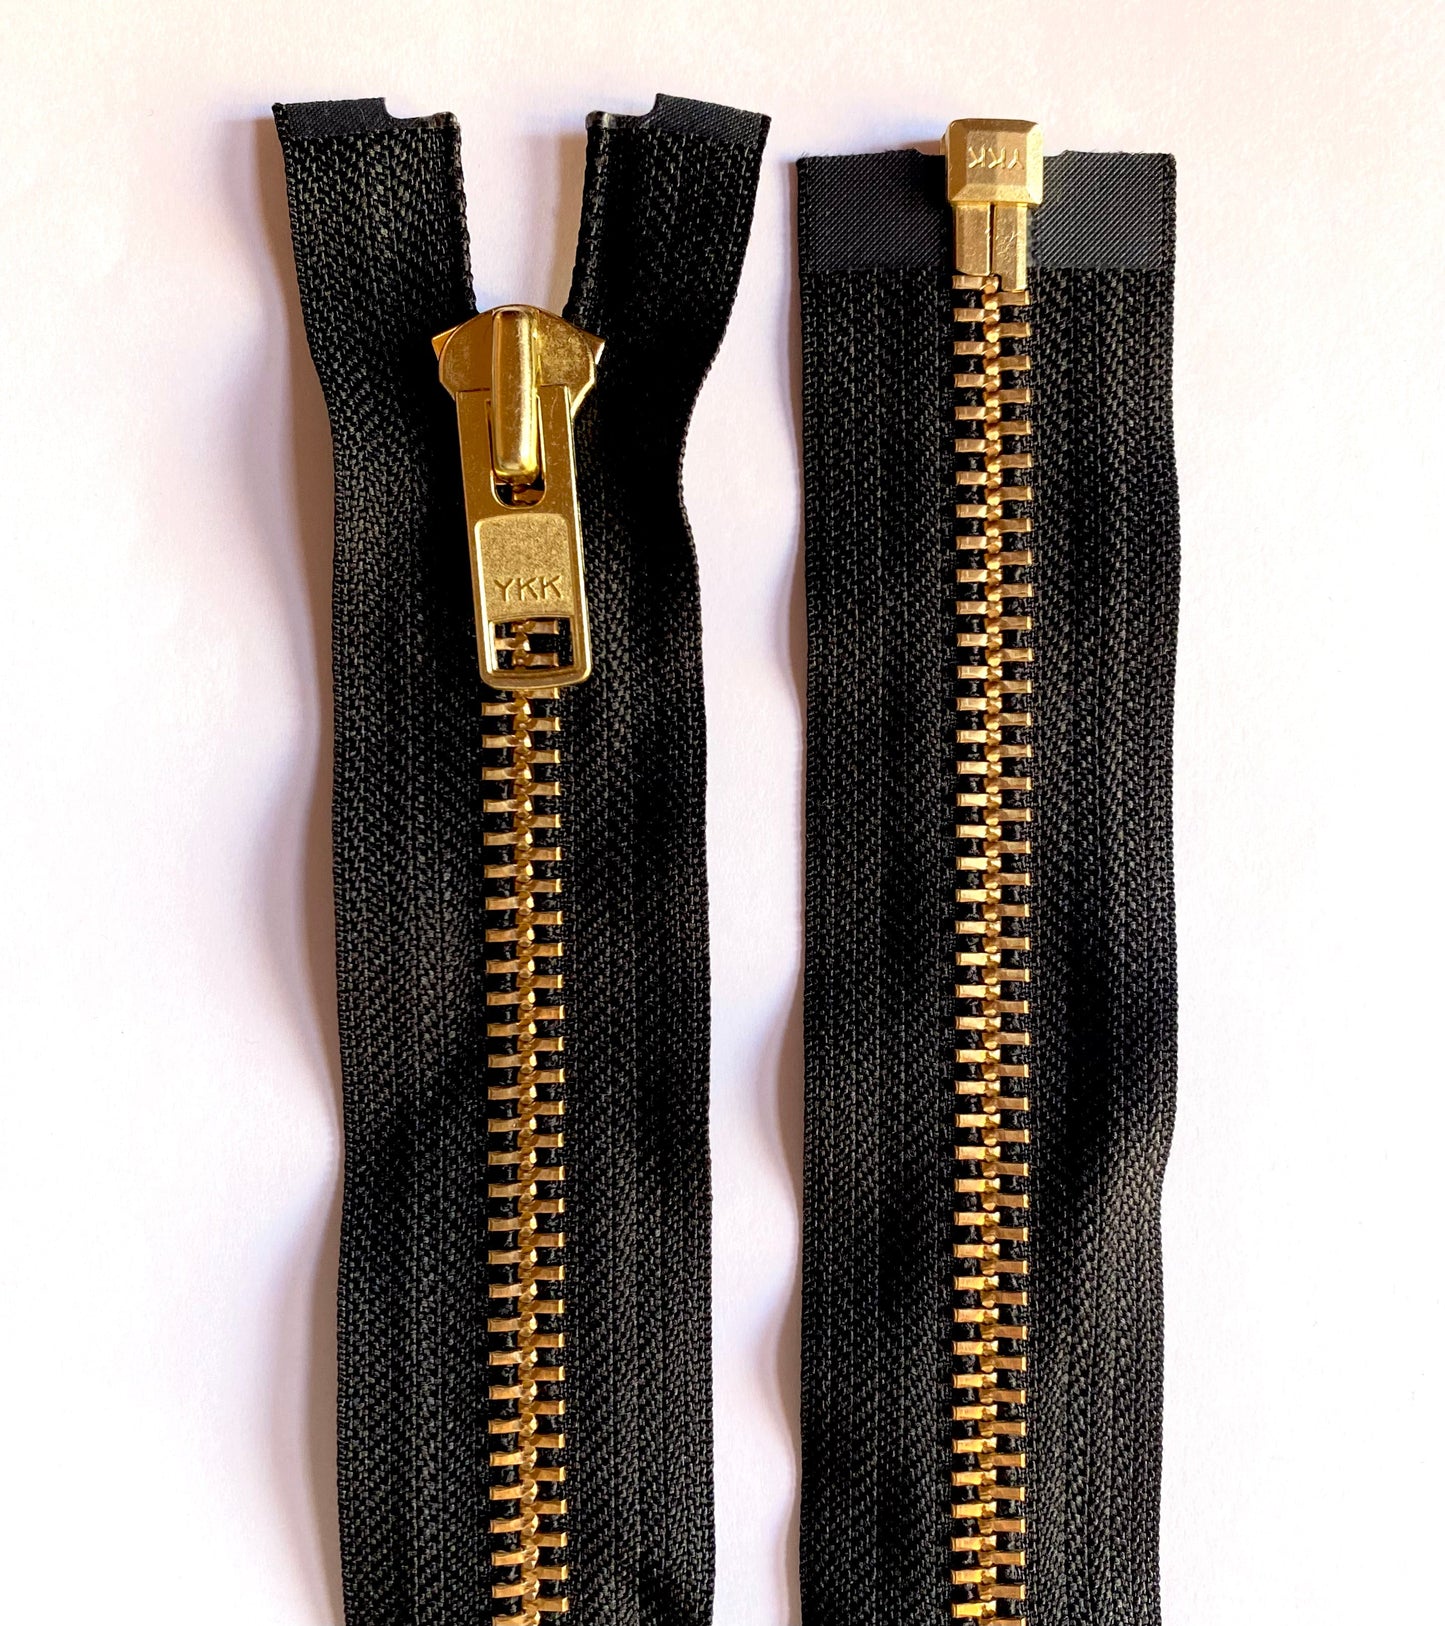 YKK metal zipper divisible 72 cm